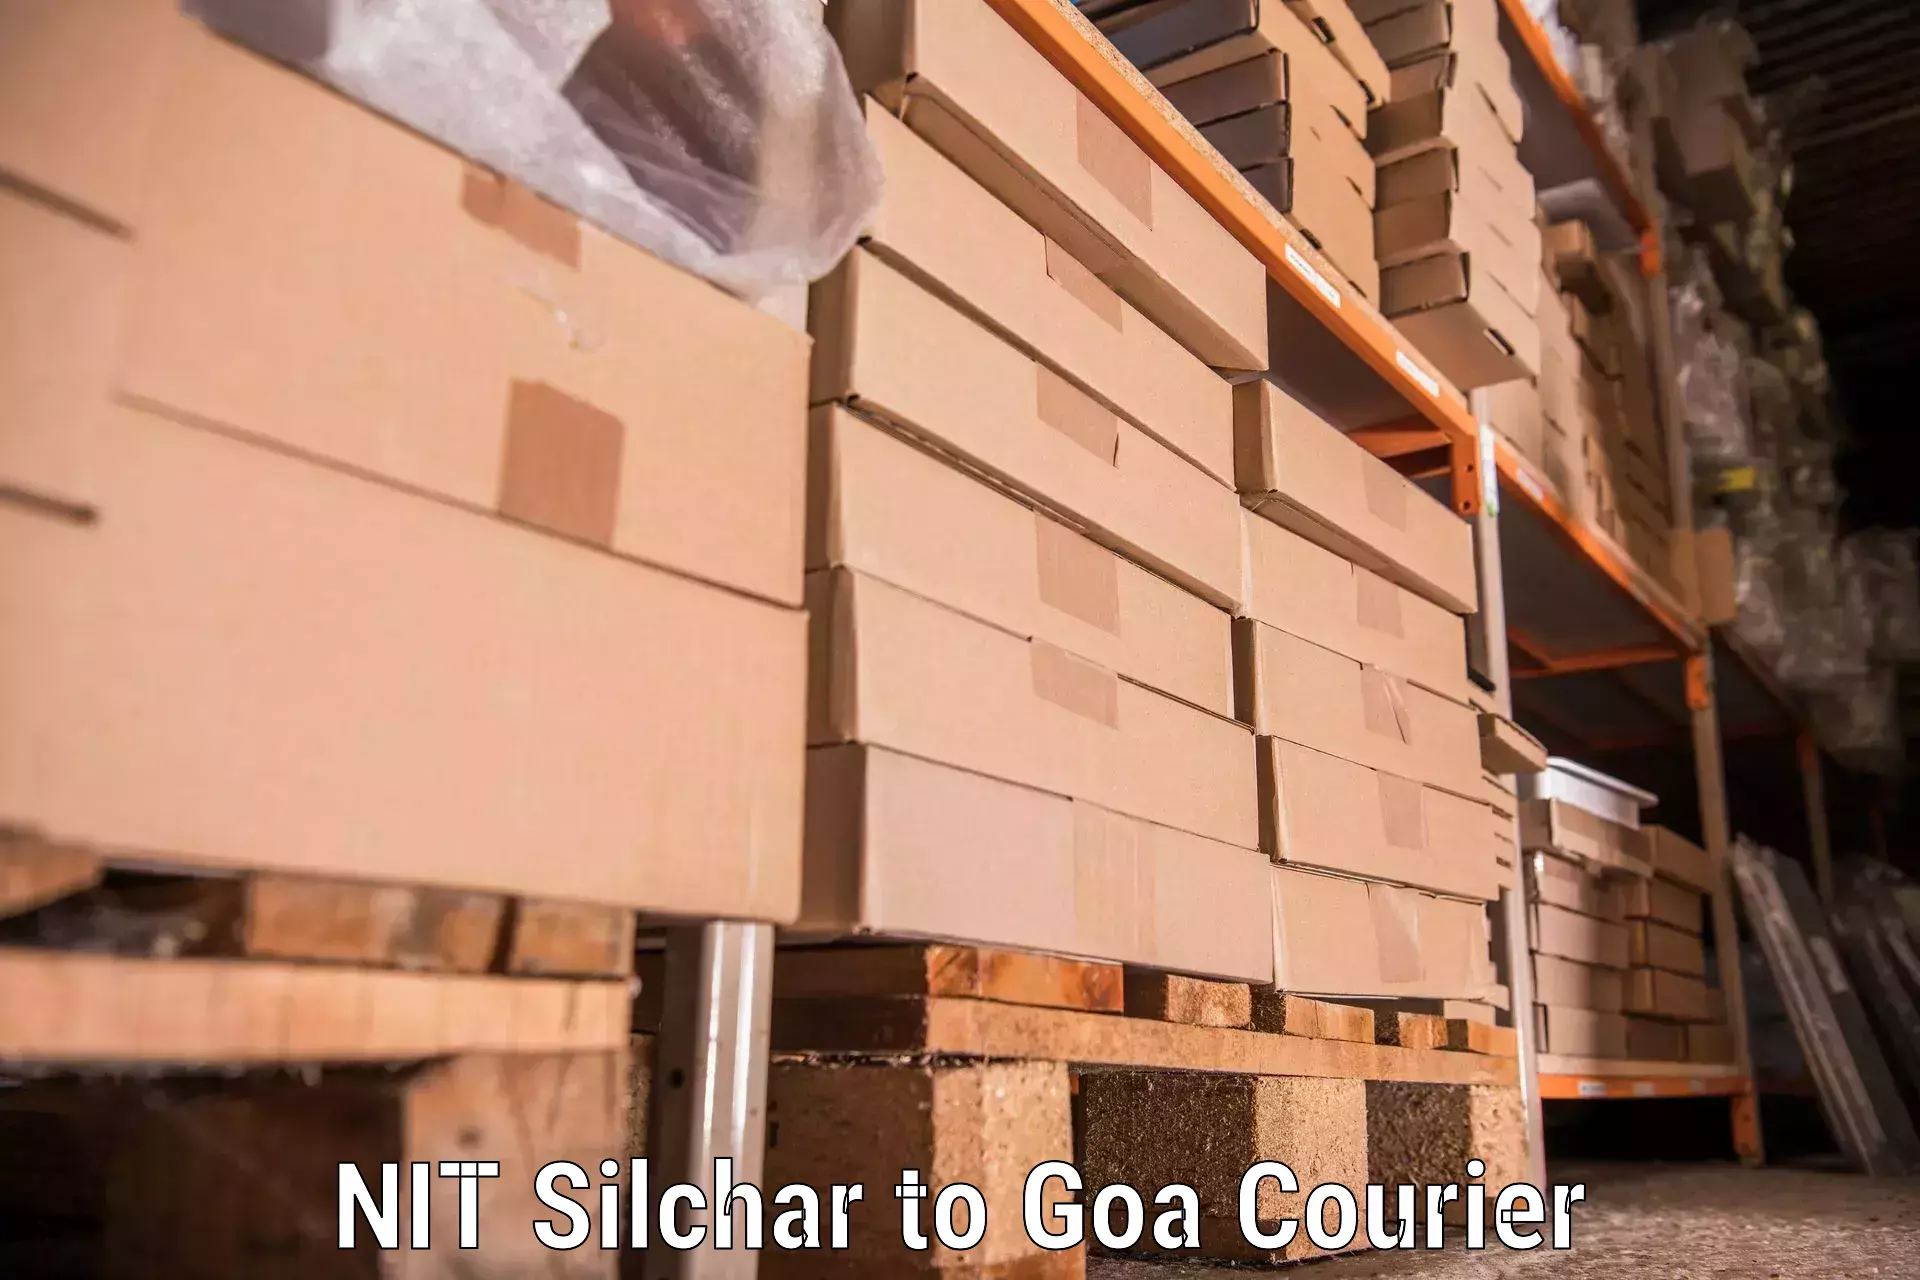 Furniture delivery service NIT Silchar to Sanvordem